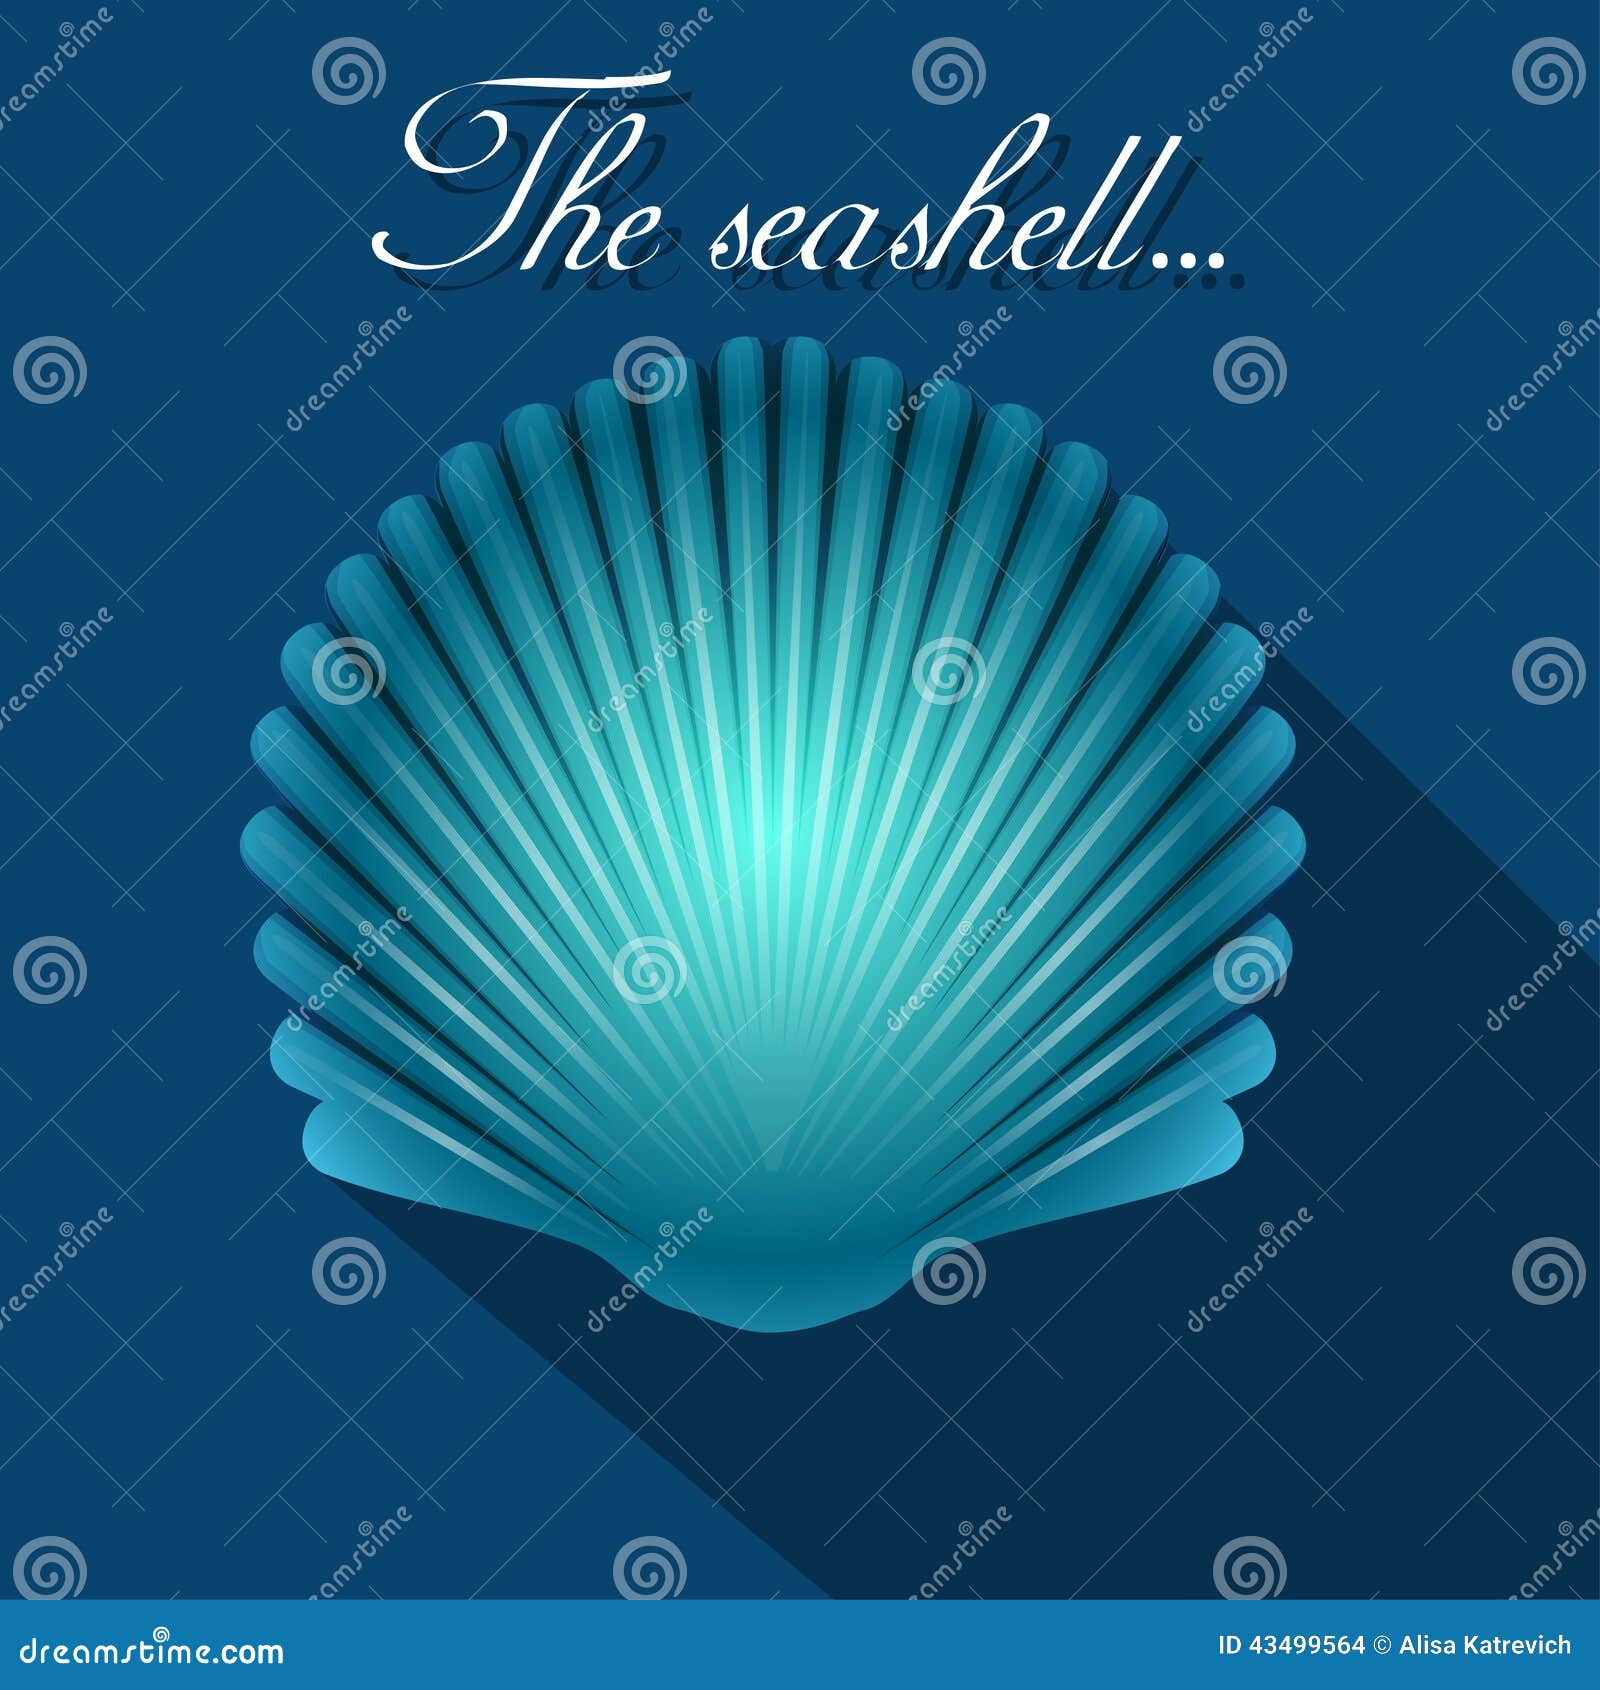 sea scallop seashell blue icon. .